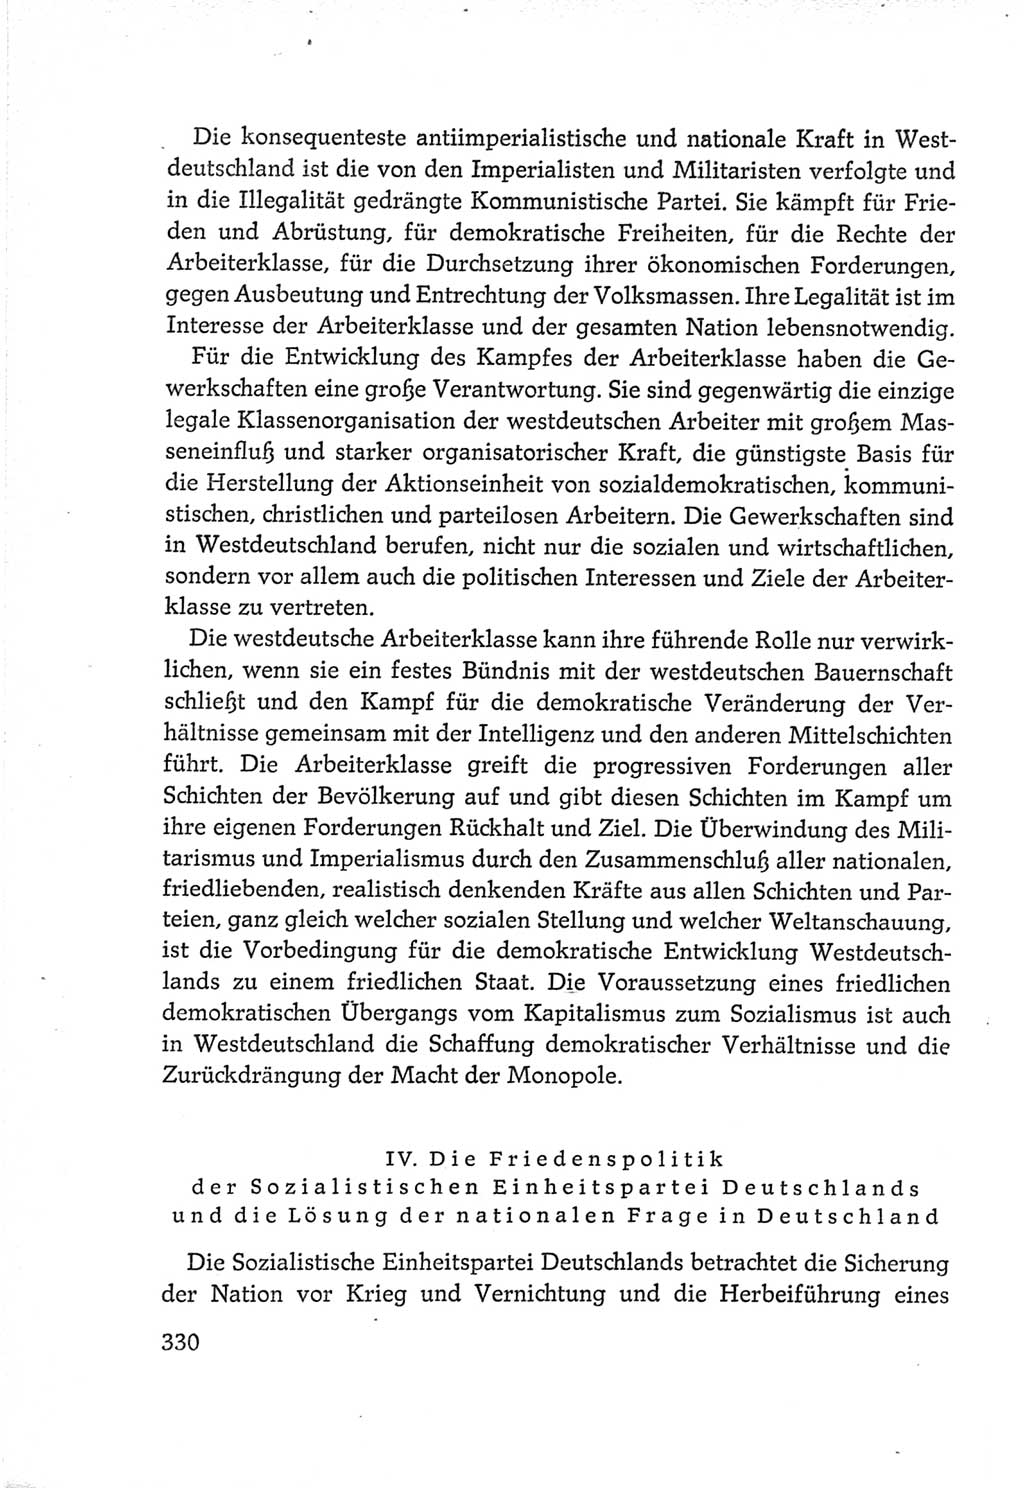 Protokoll der Verhandlungen des Ⅵ. Parteitages der Sozialistischen Einheitspartei Deutschlands (SED) [Deutsche Demokratische Republik (DDR)] 1963, Band Ⅳ, Seite 330 (Prot. Verh. Ⅵ. PT SED DDR 1963, Bd. Ⅳ, S. 330)